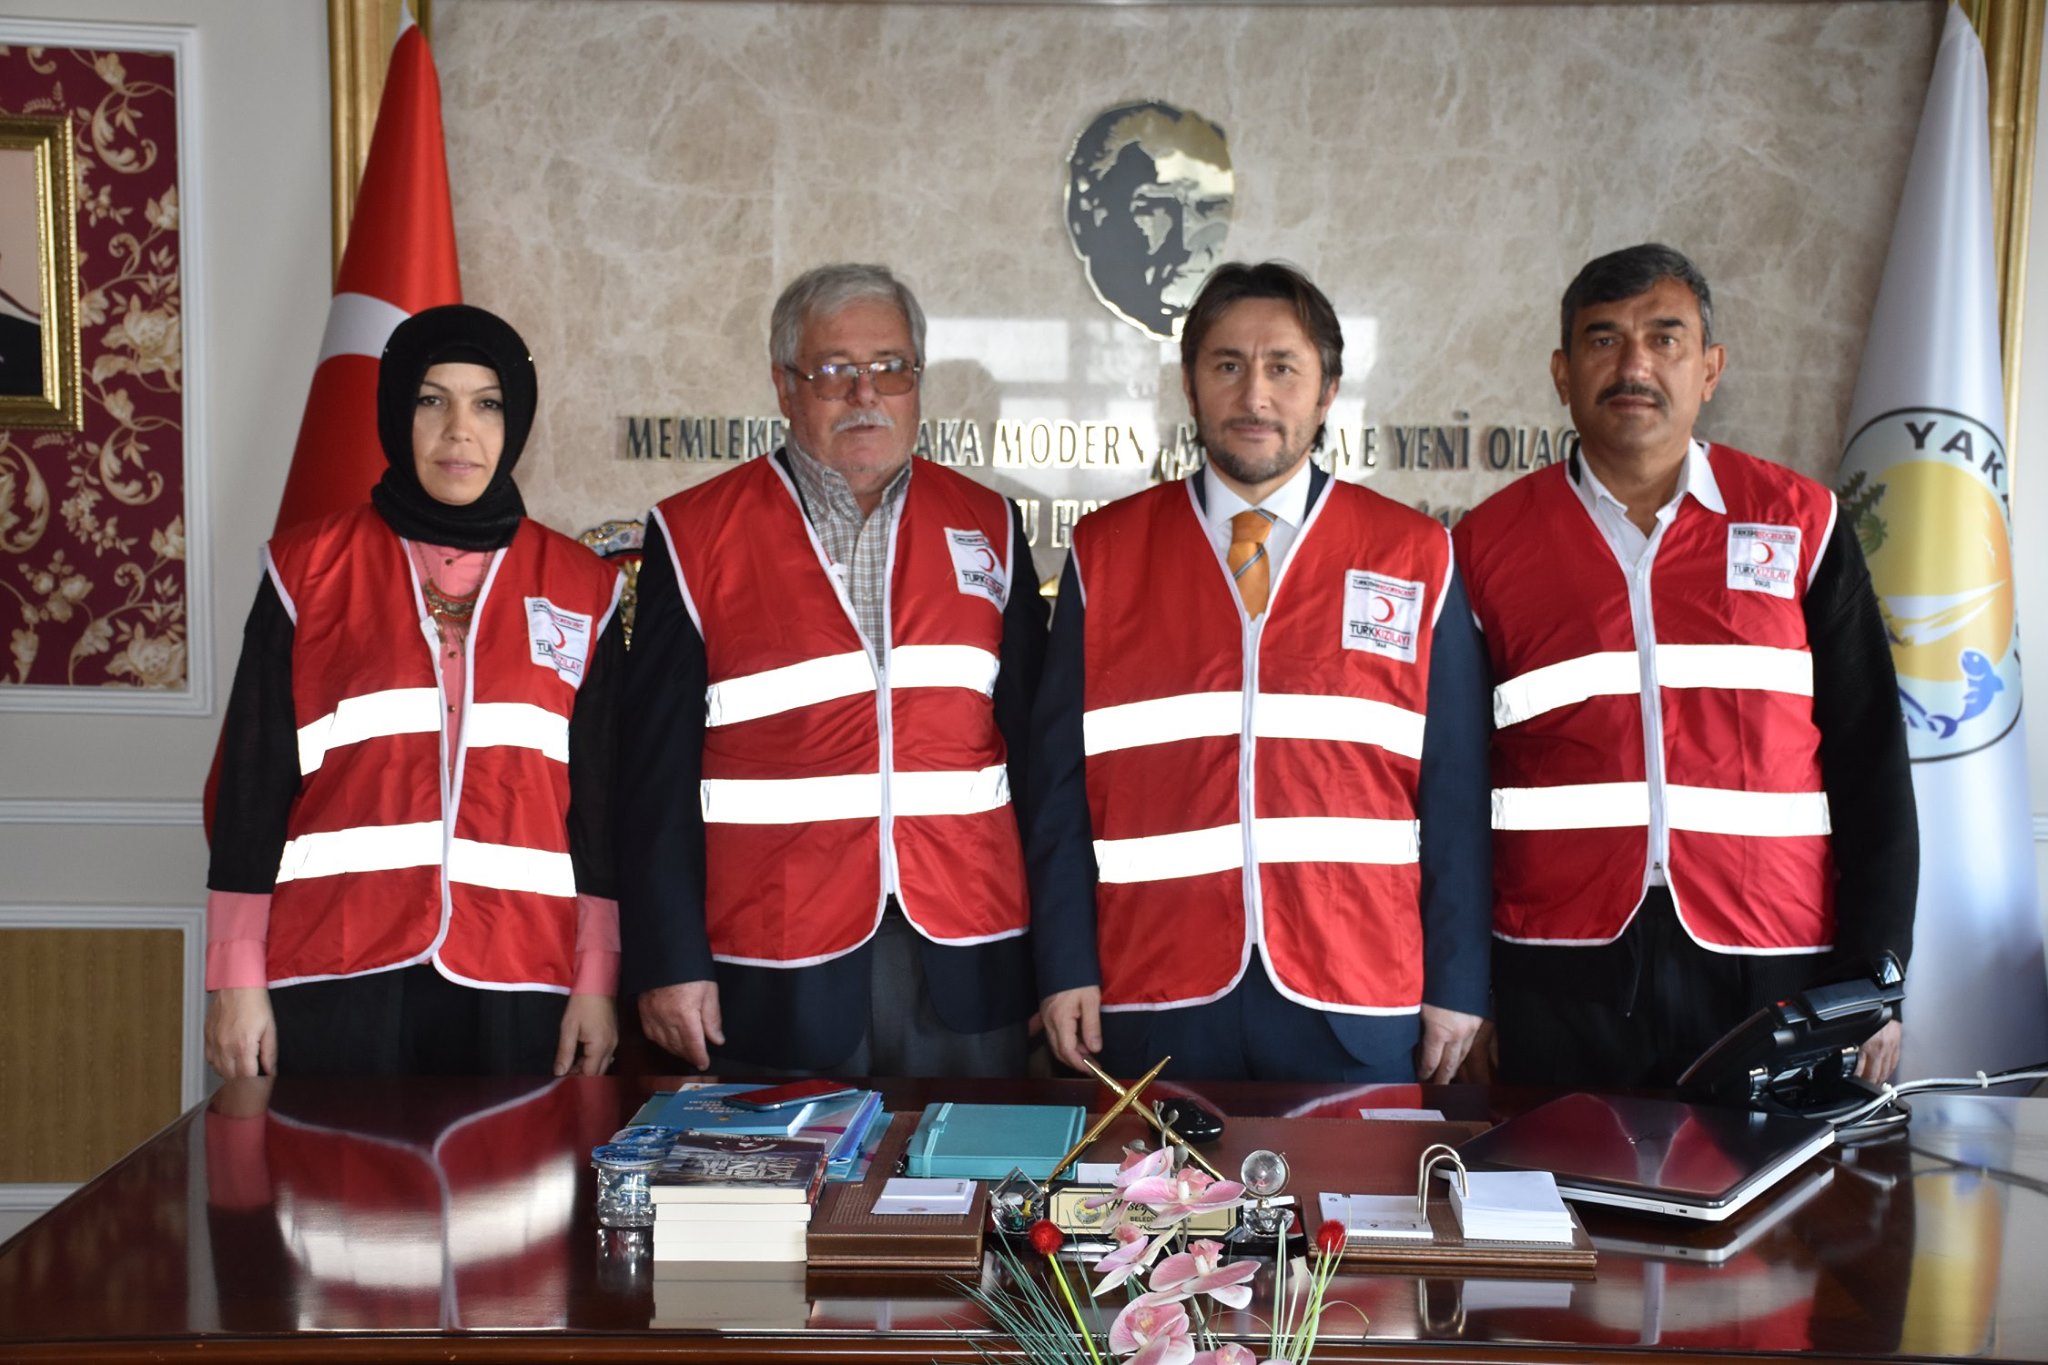 Kızılay Haftası kapsamında Türk Kızılay Yakakent Temsilciliği tarafından Başkanımız Hüseyin Kıyma’ya ziyarette bulunuldu.